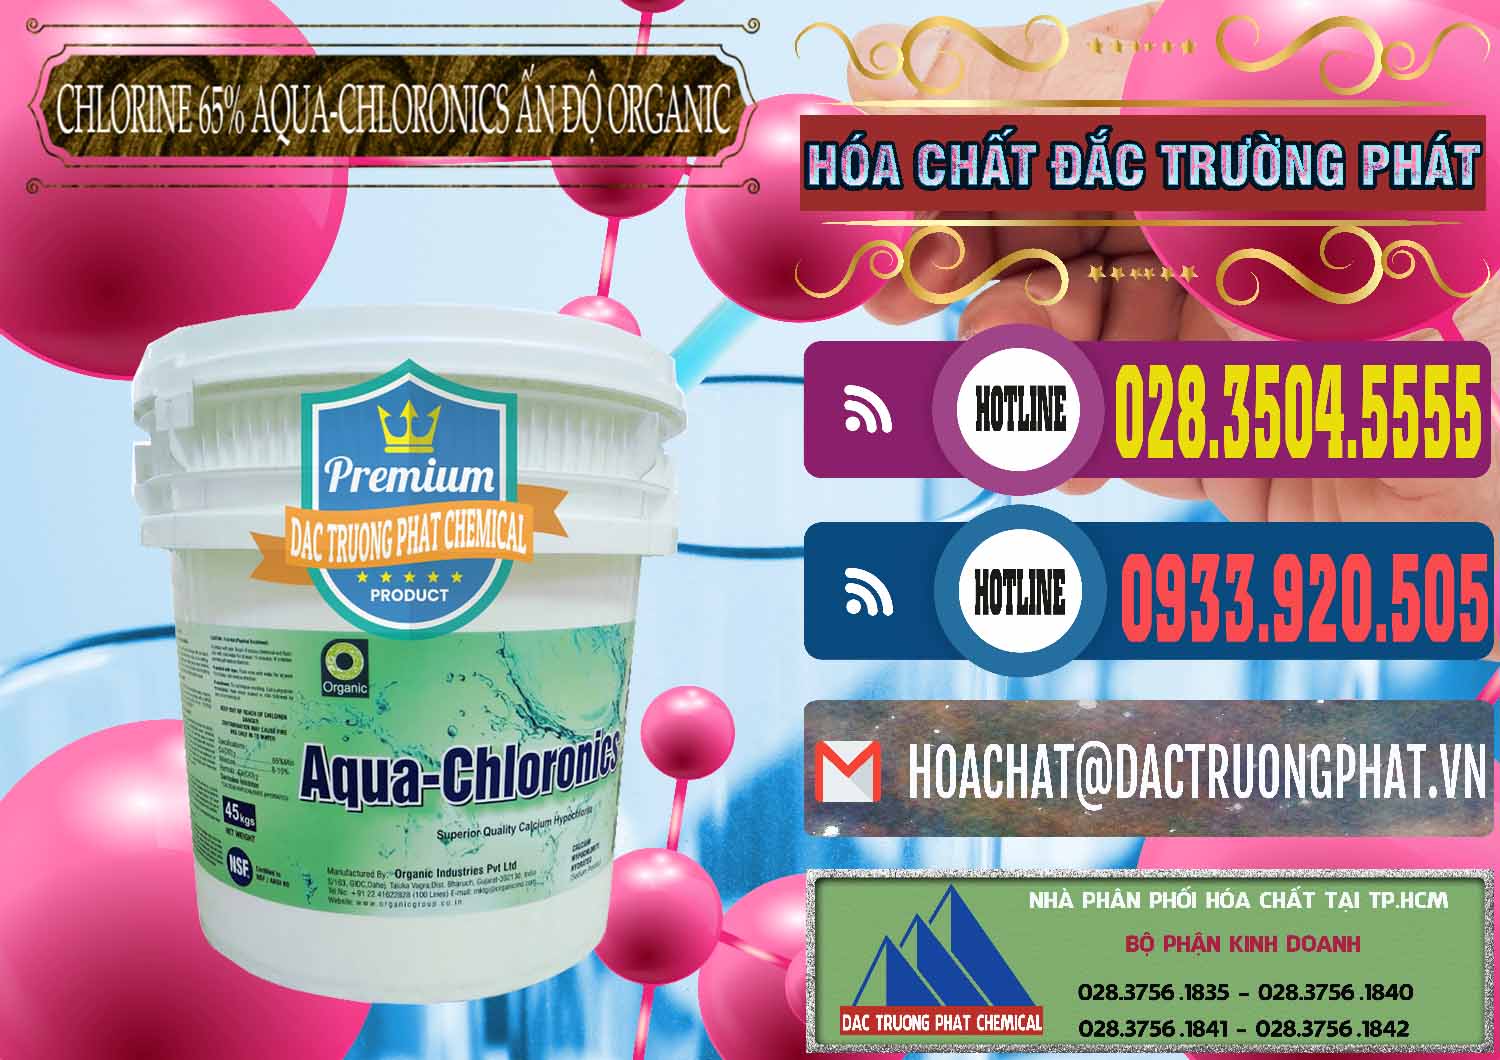 Cty chuyên bán & cung cấp Chlorine – Clorin 65% Aqua-Chloronics Ấn Độ Organic India - 0210 - Nhà nhập khẩu - phân phối hóa chất tại TP.HCM - muabanhoachat.com.vn